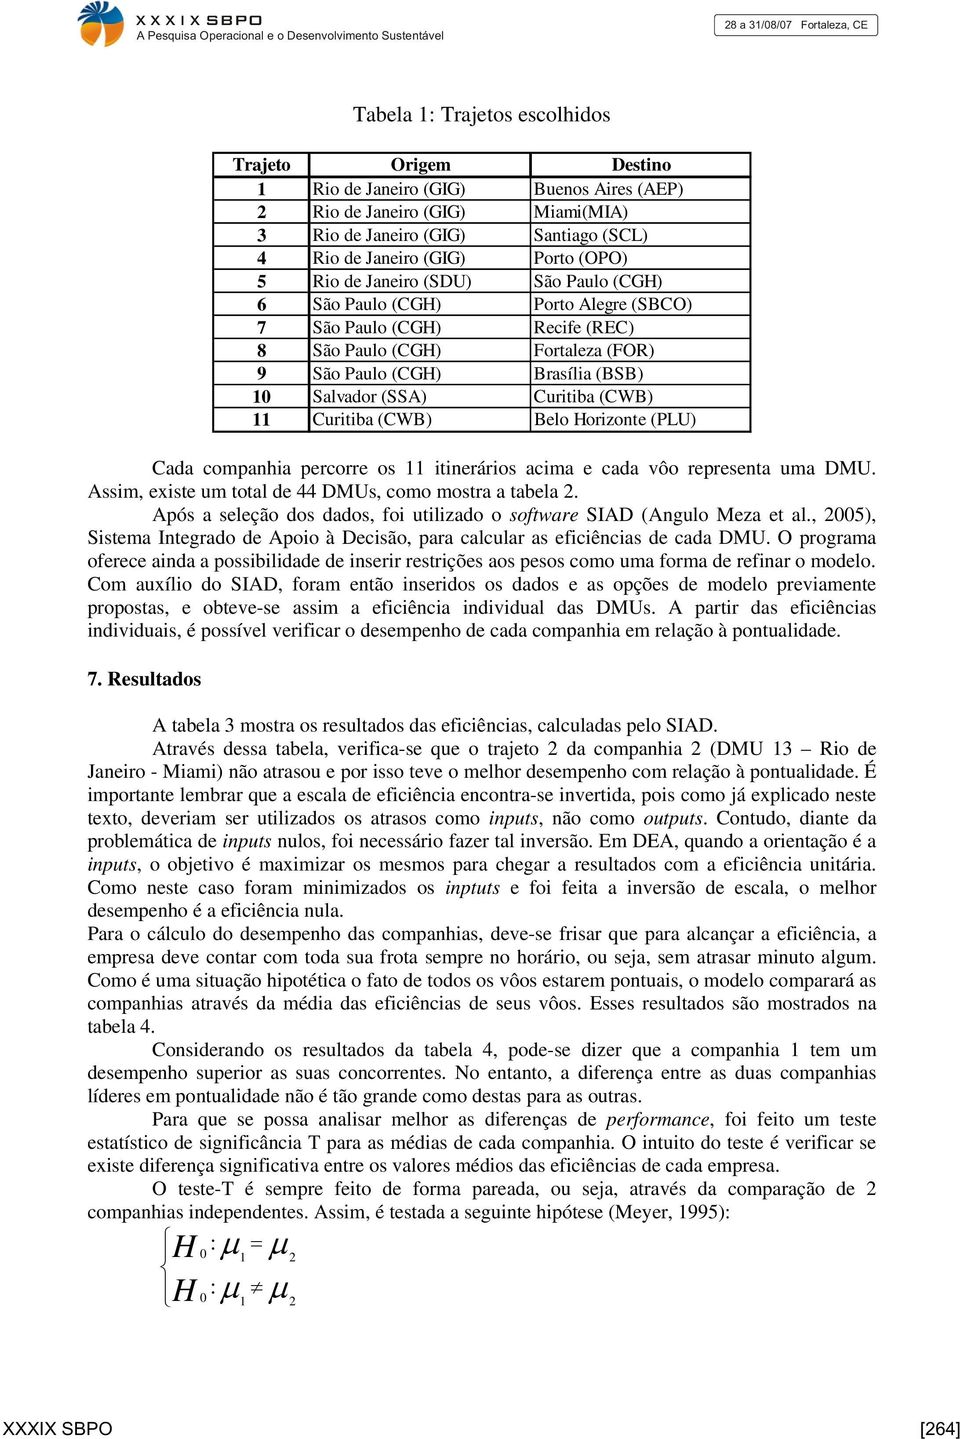 Curitiba (CWB) 11 Curitiba (CWB) Belo Horizonte (PLU) Cada companhia percorre os 11 itinerários acima e cada vôo representa uma DMU. Assim, existe um total de 44 DMUs, como mostra a tabela 2.